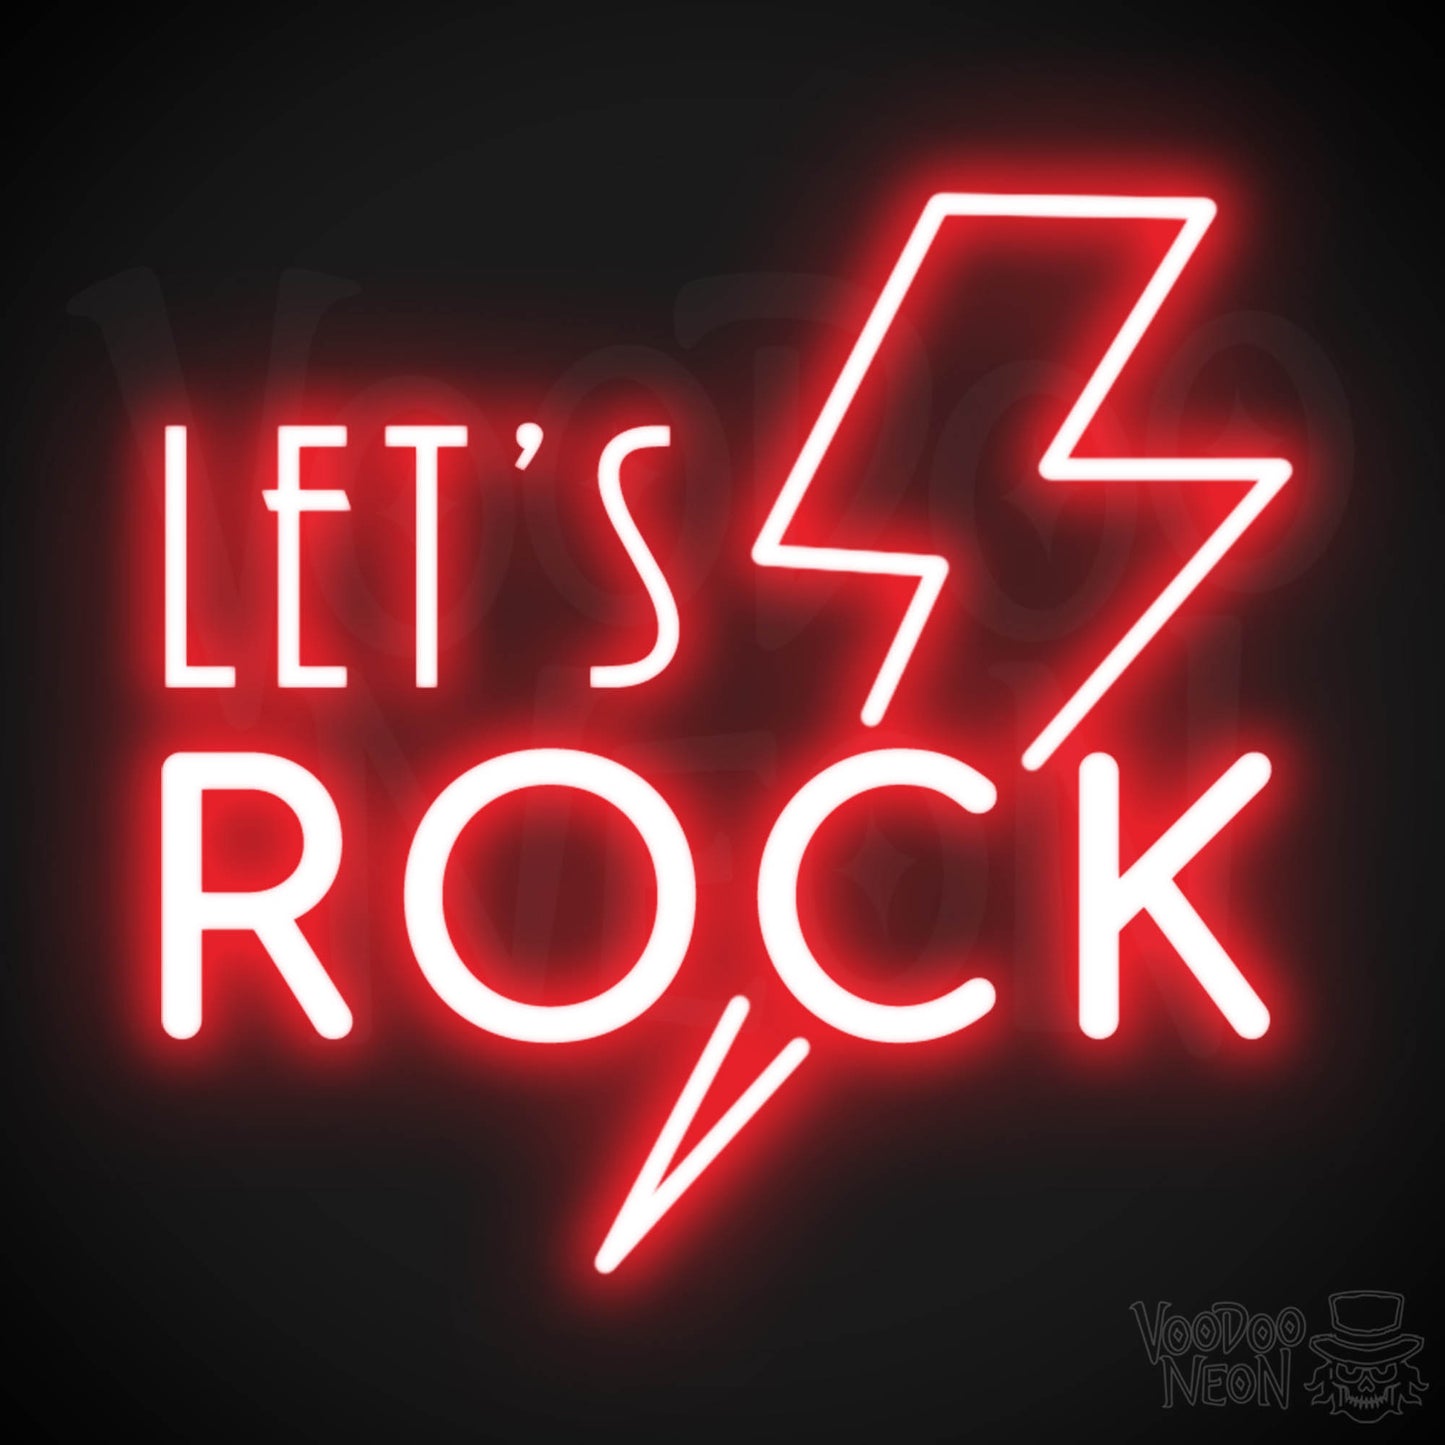 Let's Rock Neon Sign - Let's Rock LED Light Up Sign - Color Red